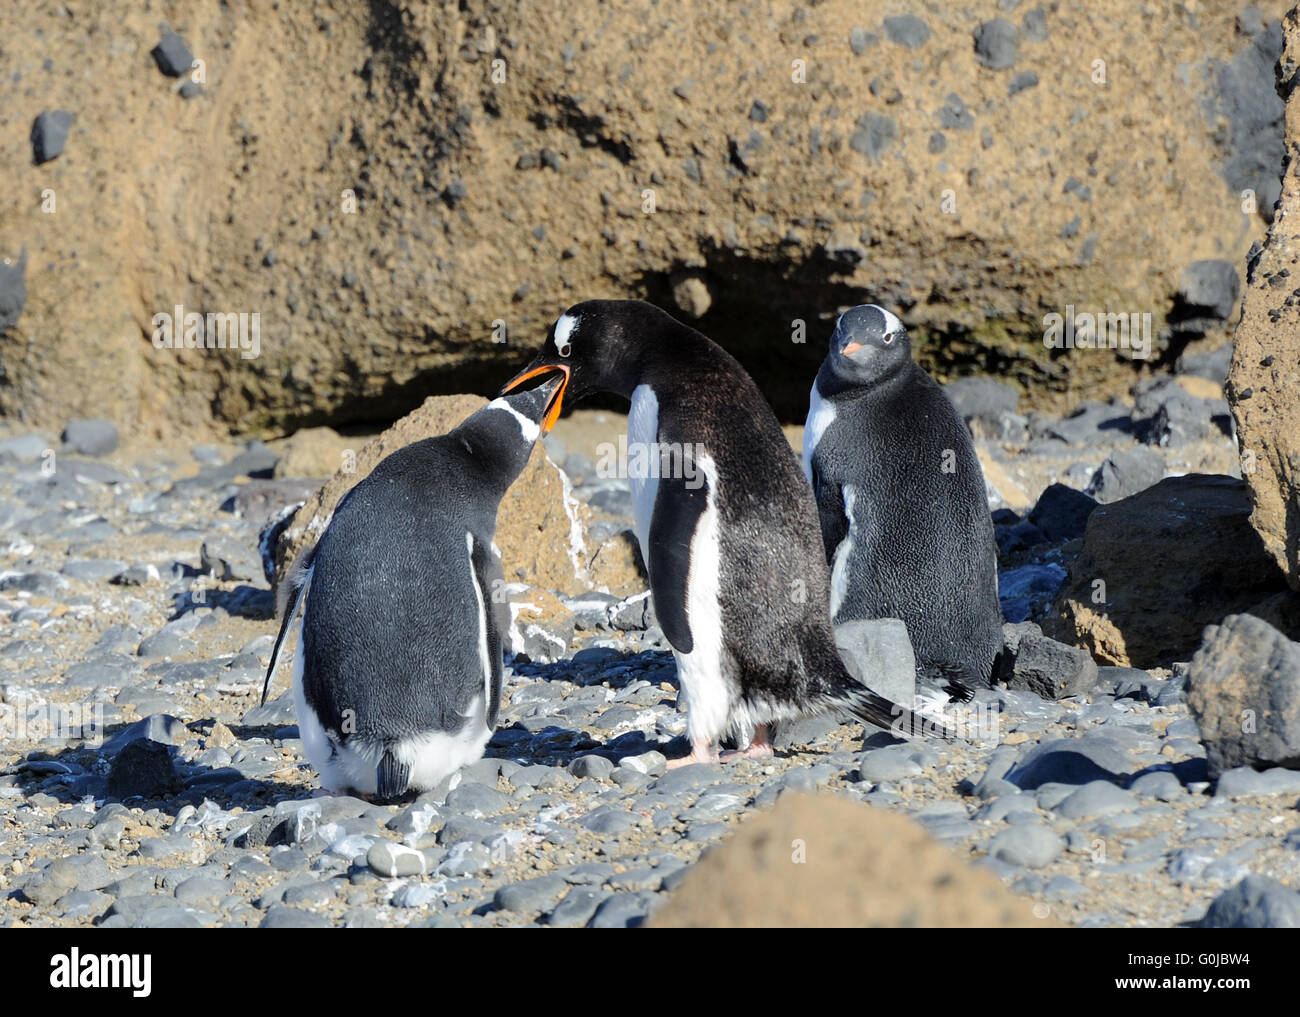 Un adulte Gentoo pingouin (Pygoscelis papua) alimente l'un de ses deux jeunes tandis que le second attend patiemment. Brown Bluff, Antarctique Banque D'Images